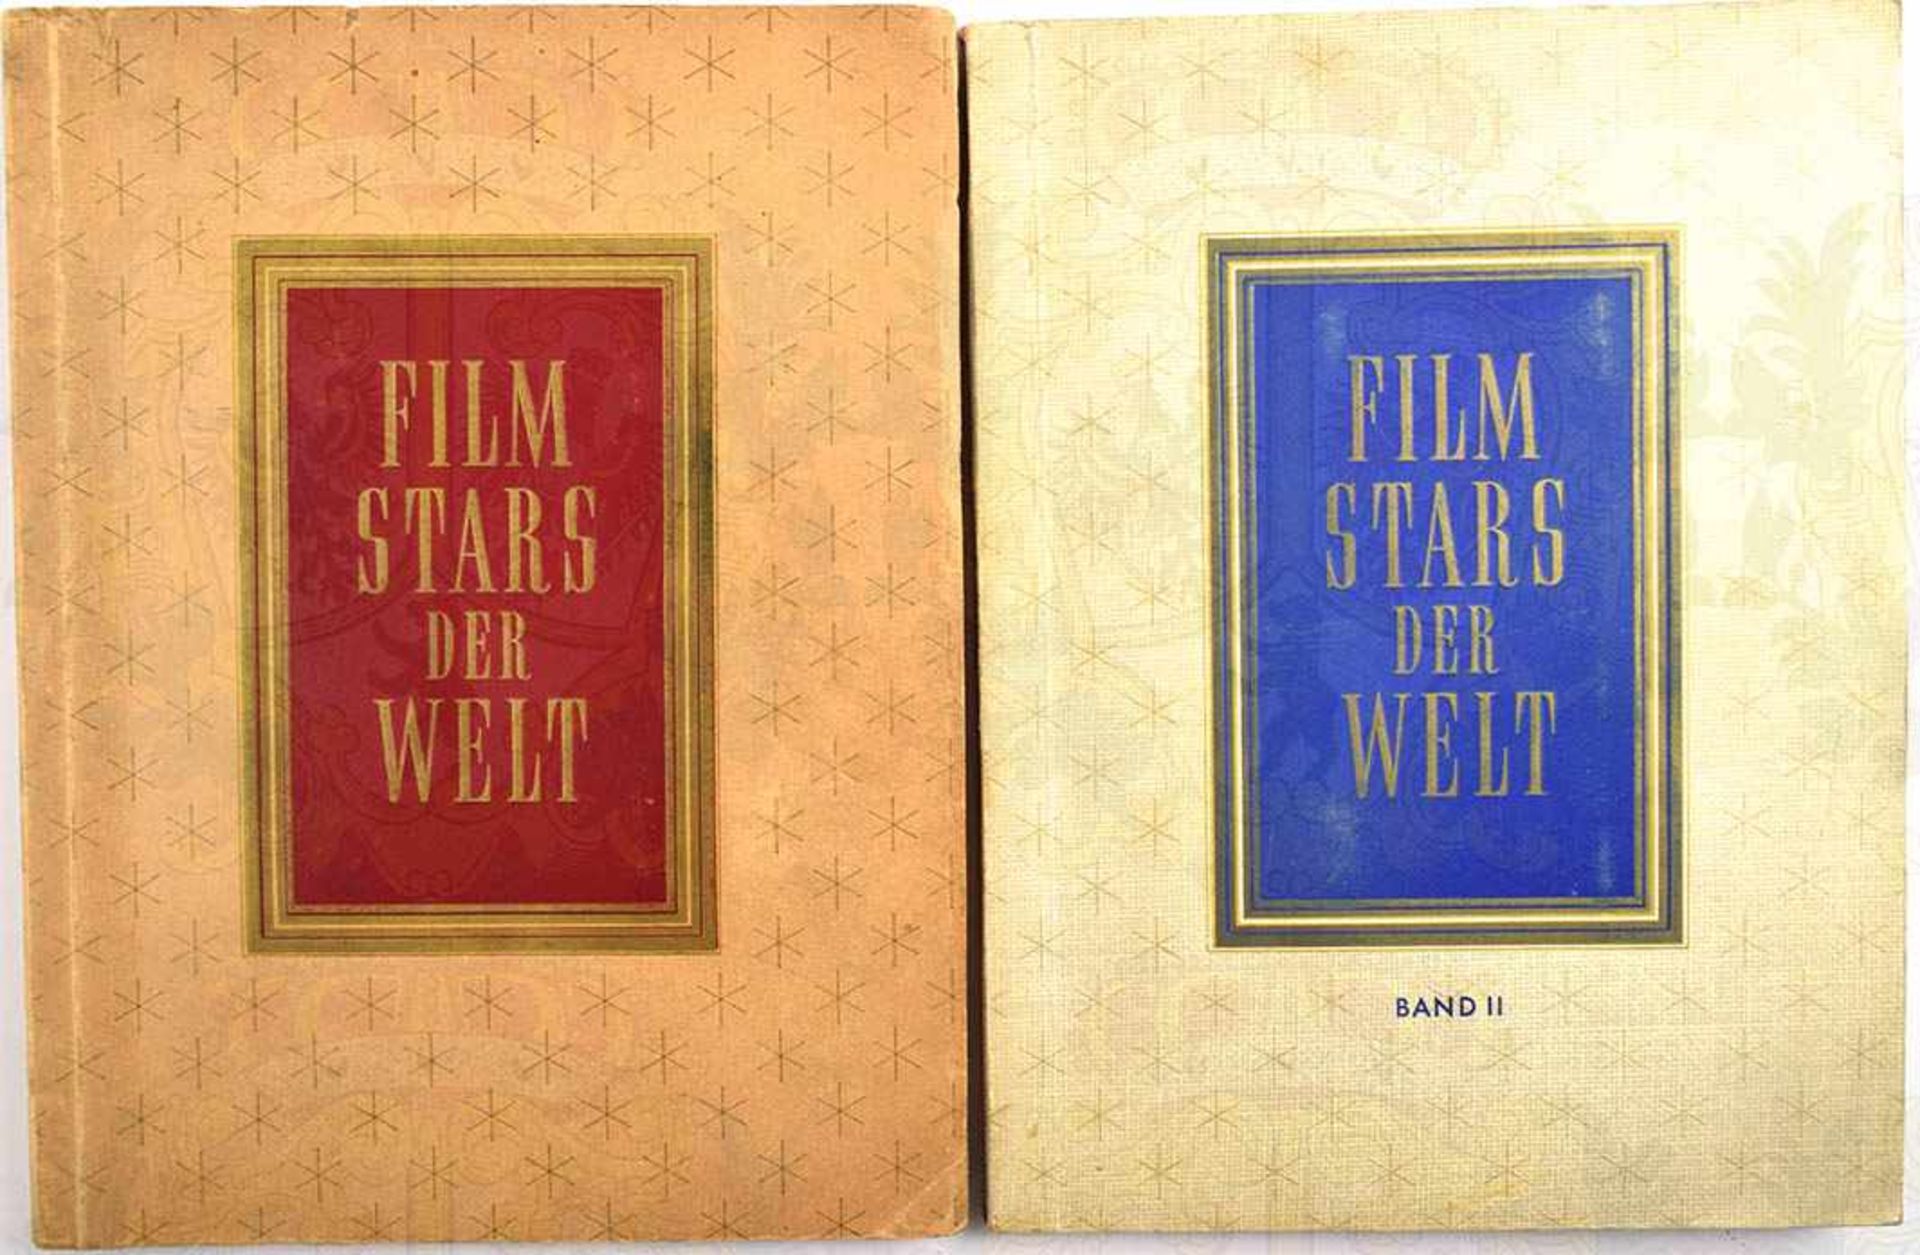 FILM STARS DER WELT, Bde. 1 u. 2, Greiling, Ostholstein 1951, ges. 413 Bilder nach Fotos, bde.,